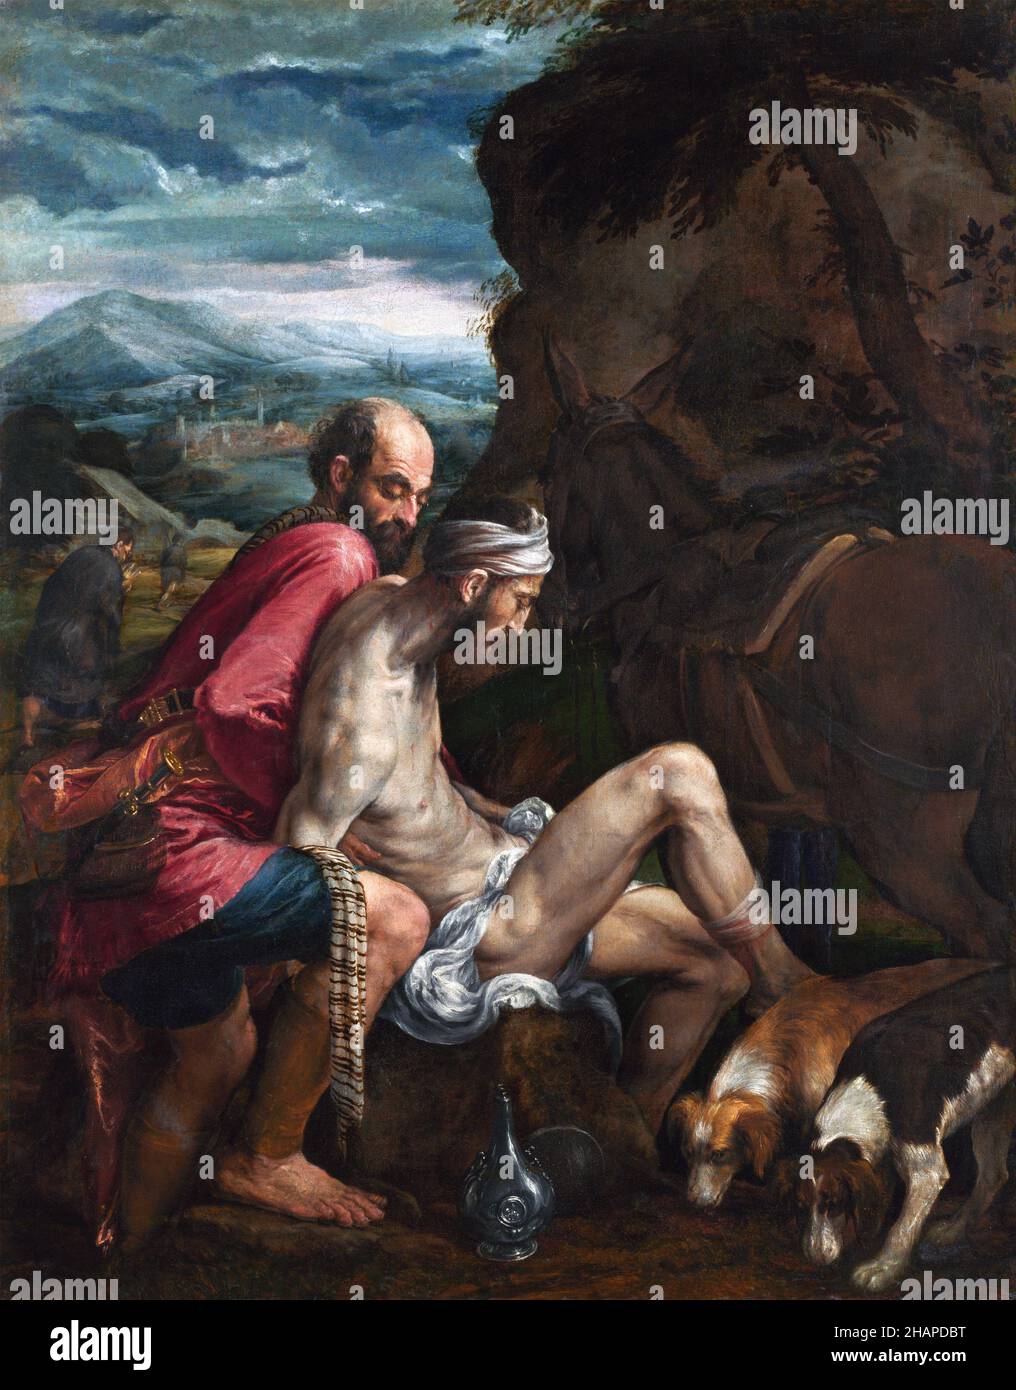 Le bon Samaritain par Jacopo Bassano (1510-1592), huile sur toile, c.1562/3 Banque D'Images